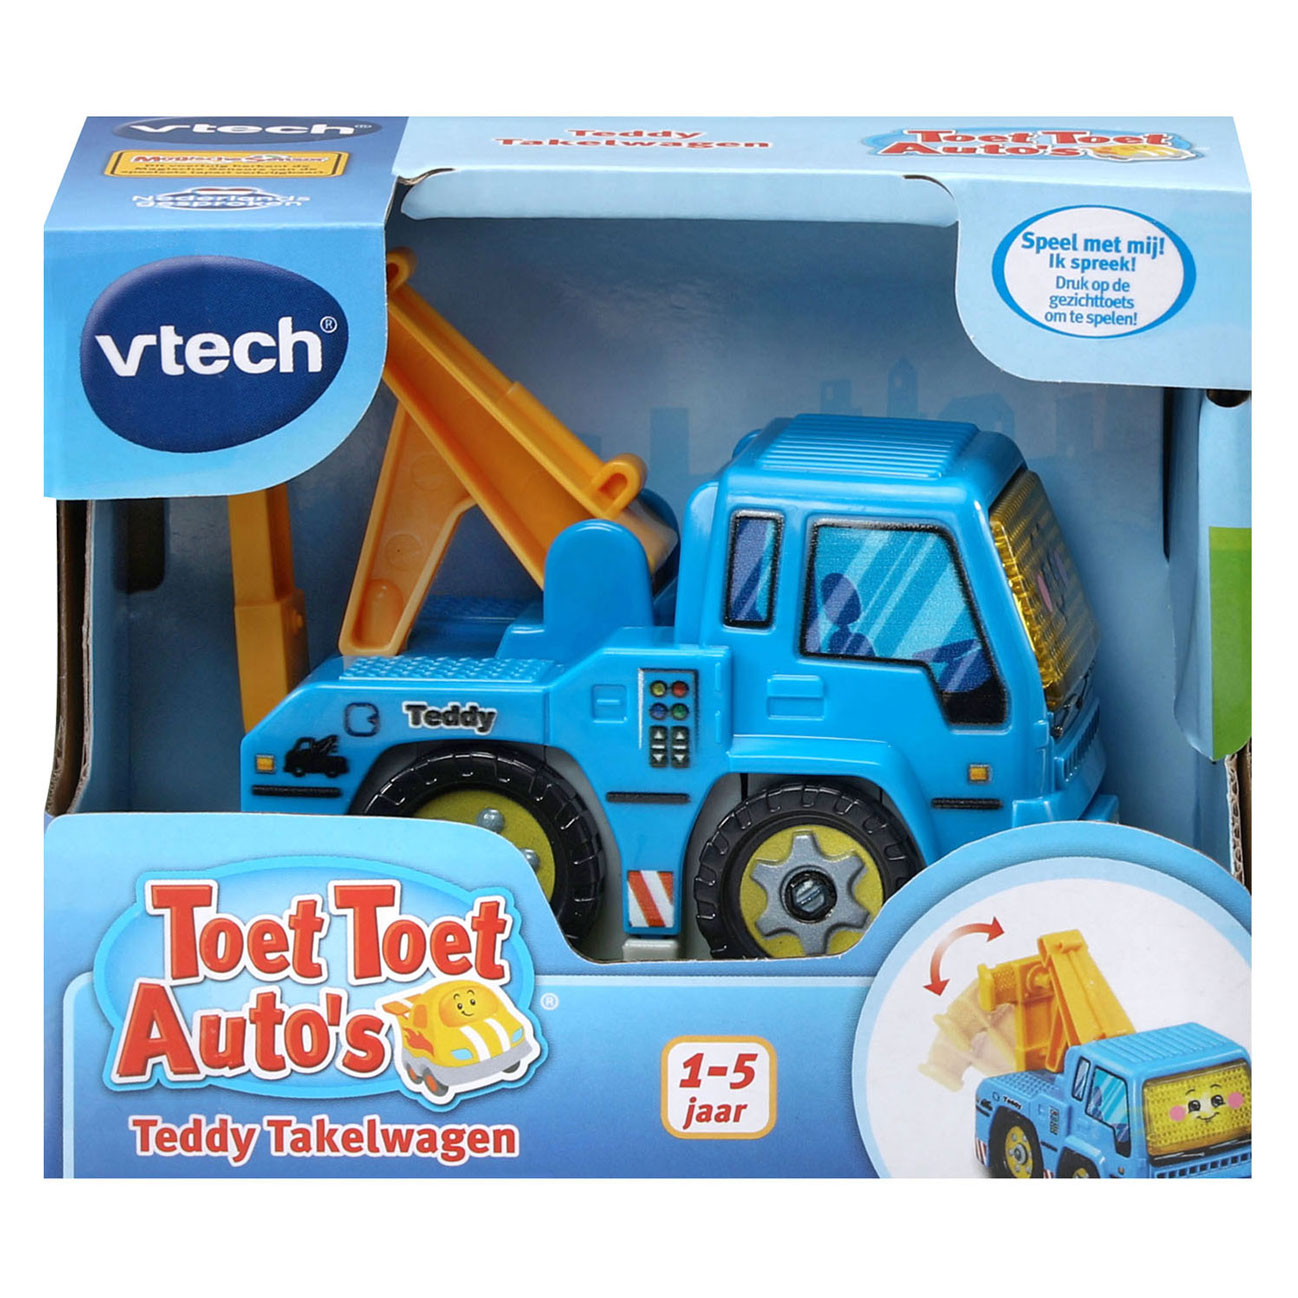 VTech Toet toet Auto's Teddy Takelwagen